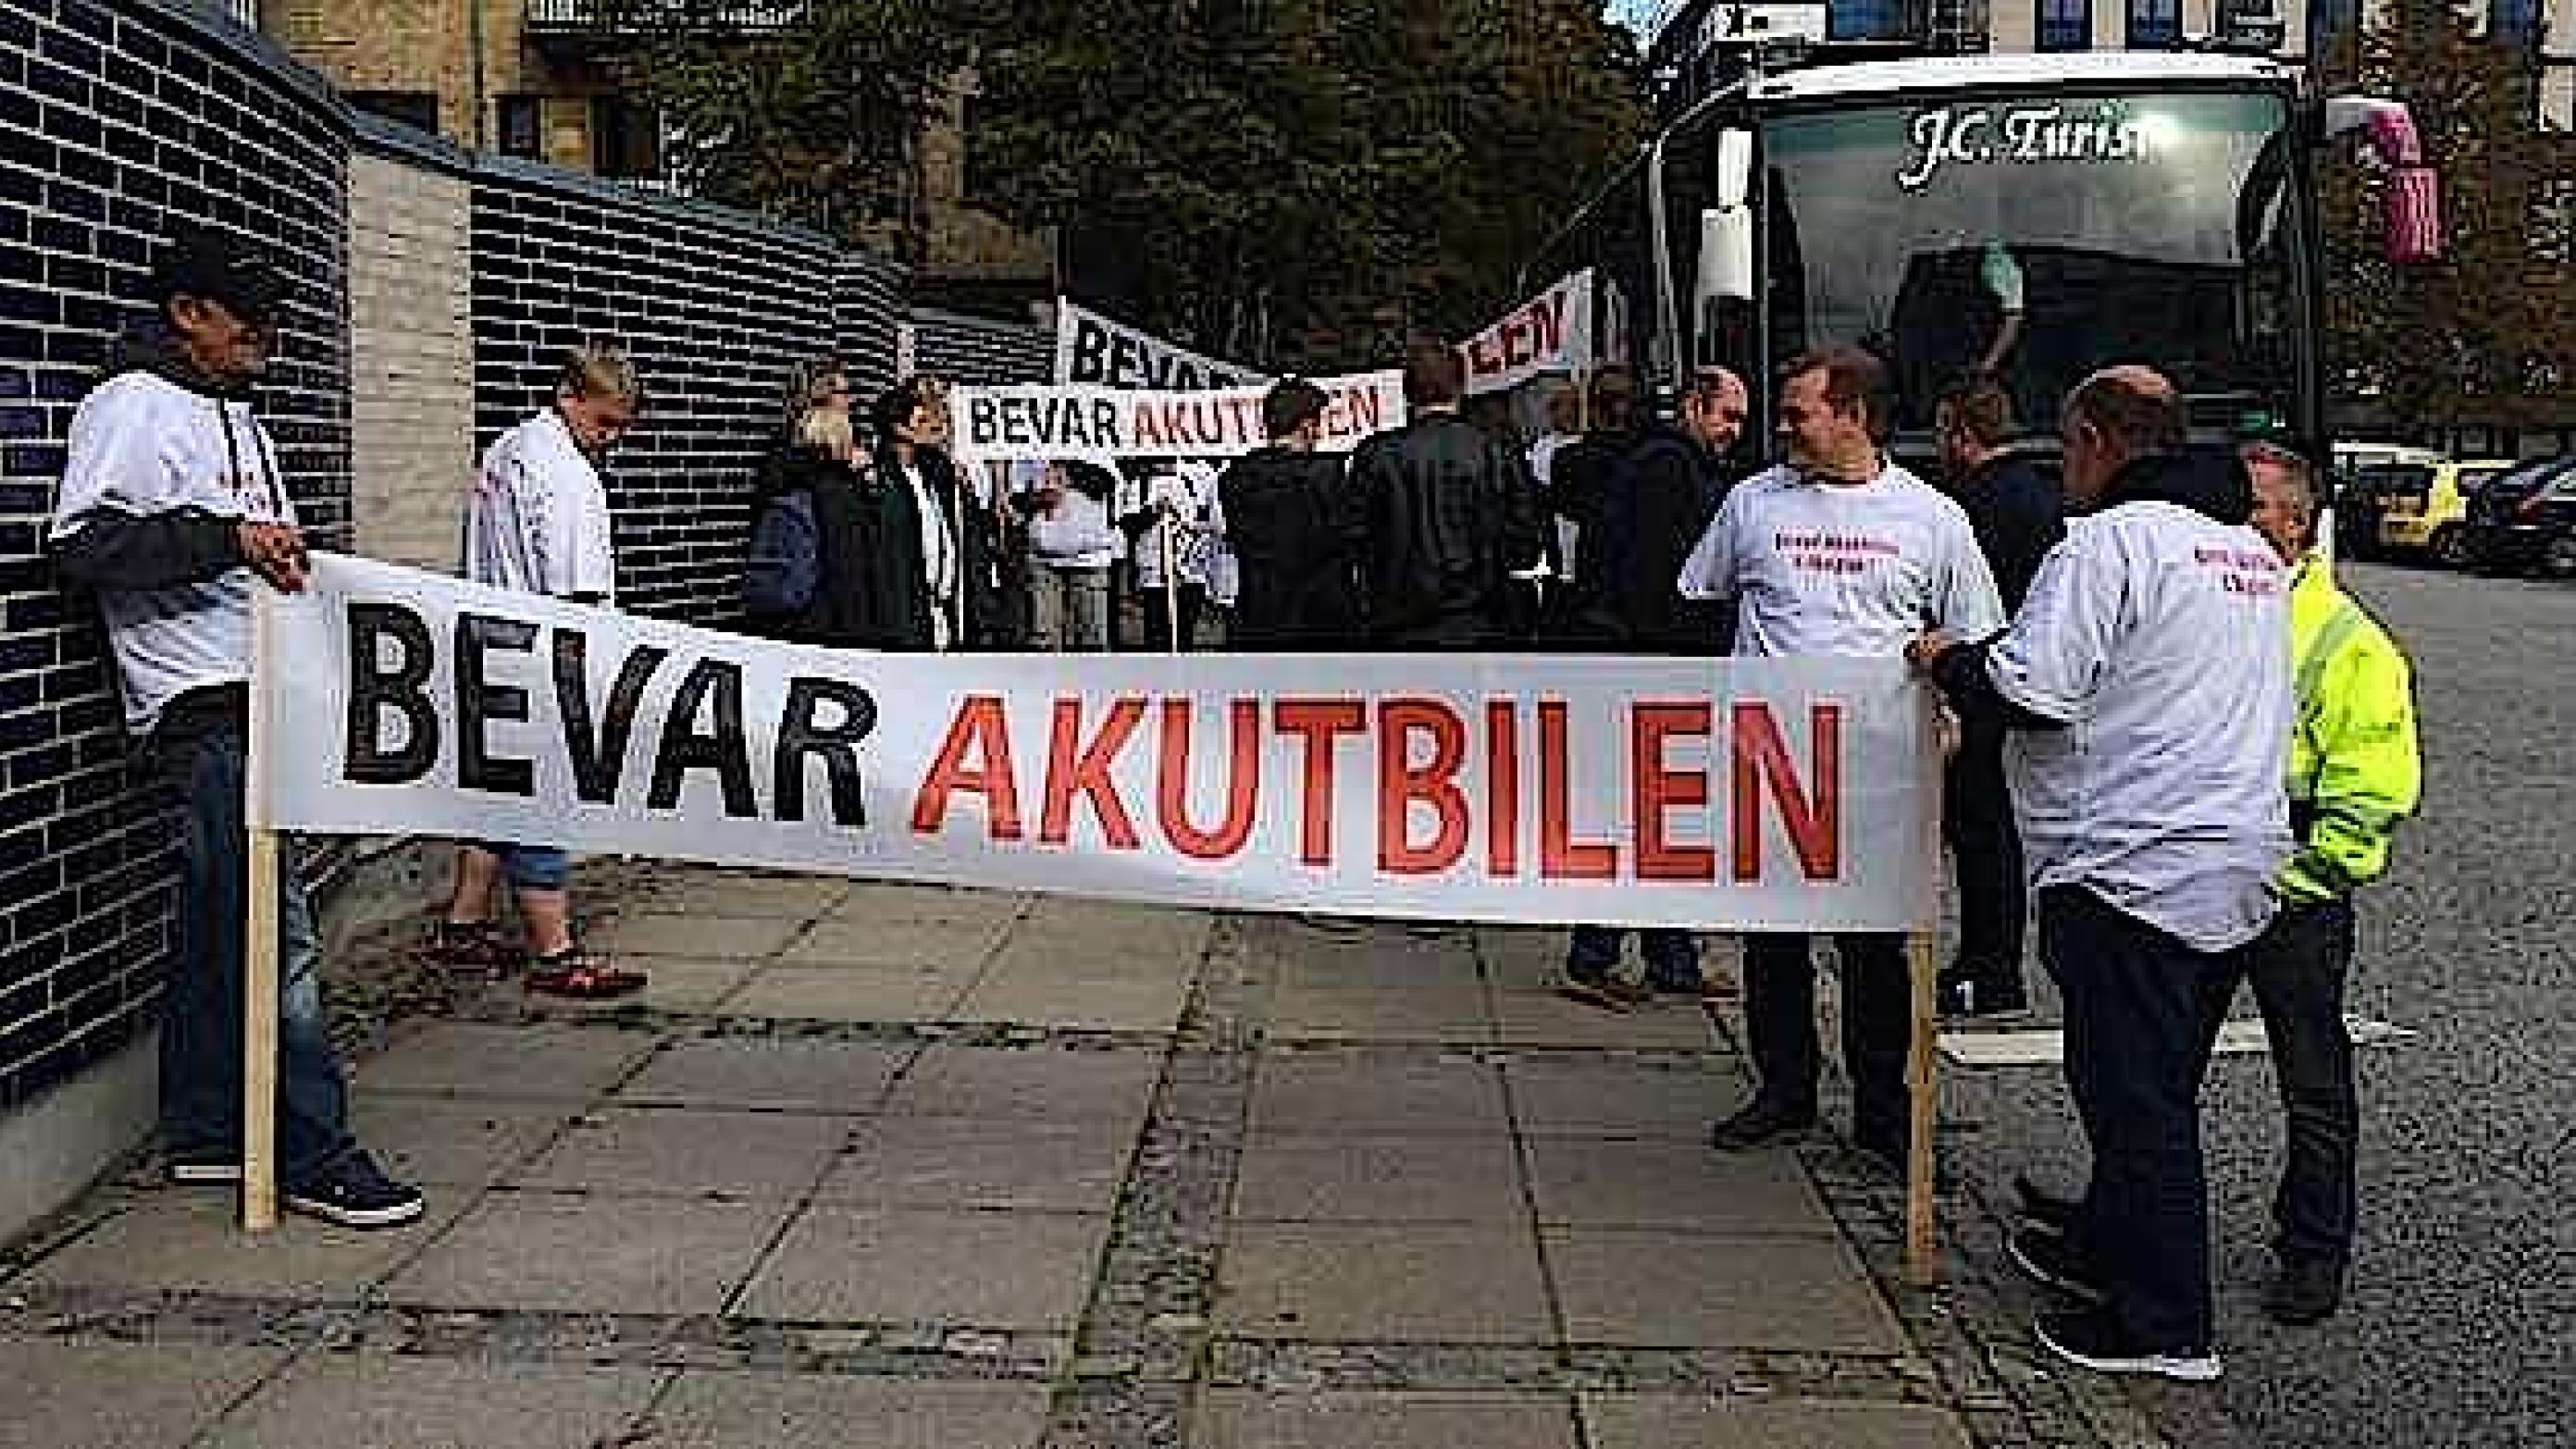 Planer om at nedlægge akutbilen i Skagen har mødt voldsom modstand. Foto fra facebook-siden "Bevar Akutbilen".